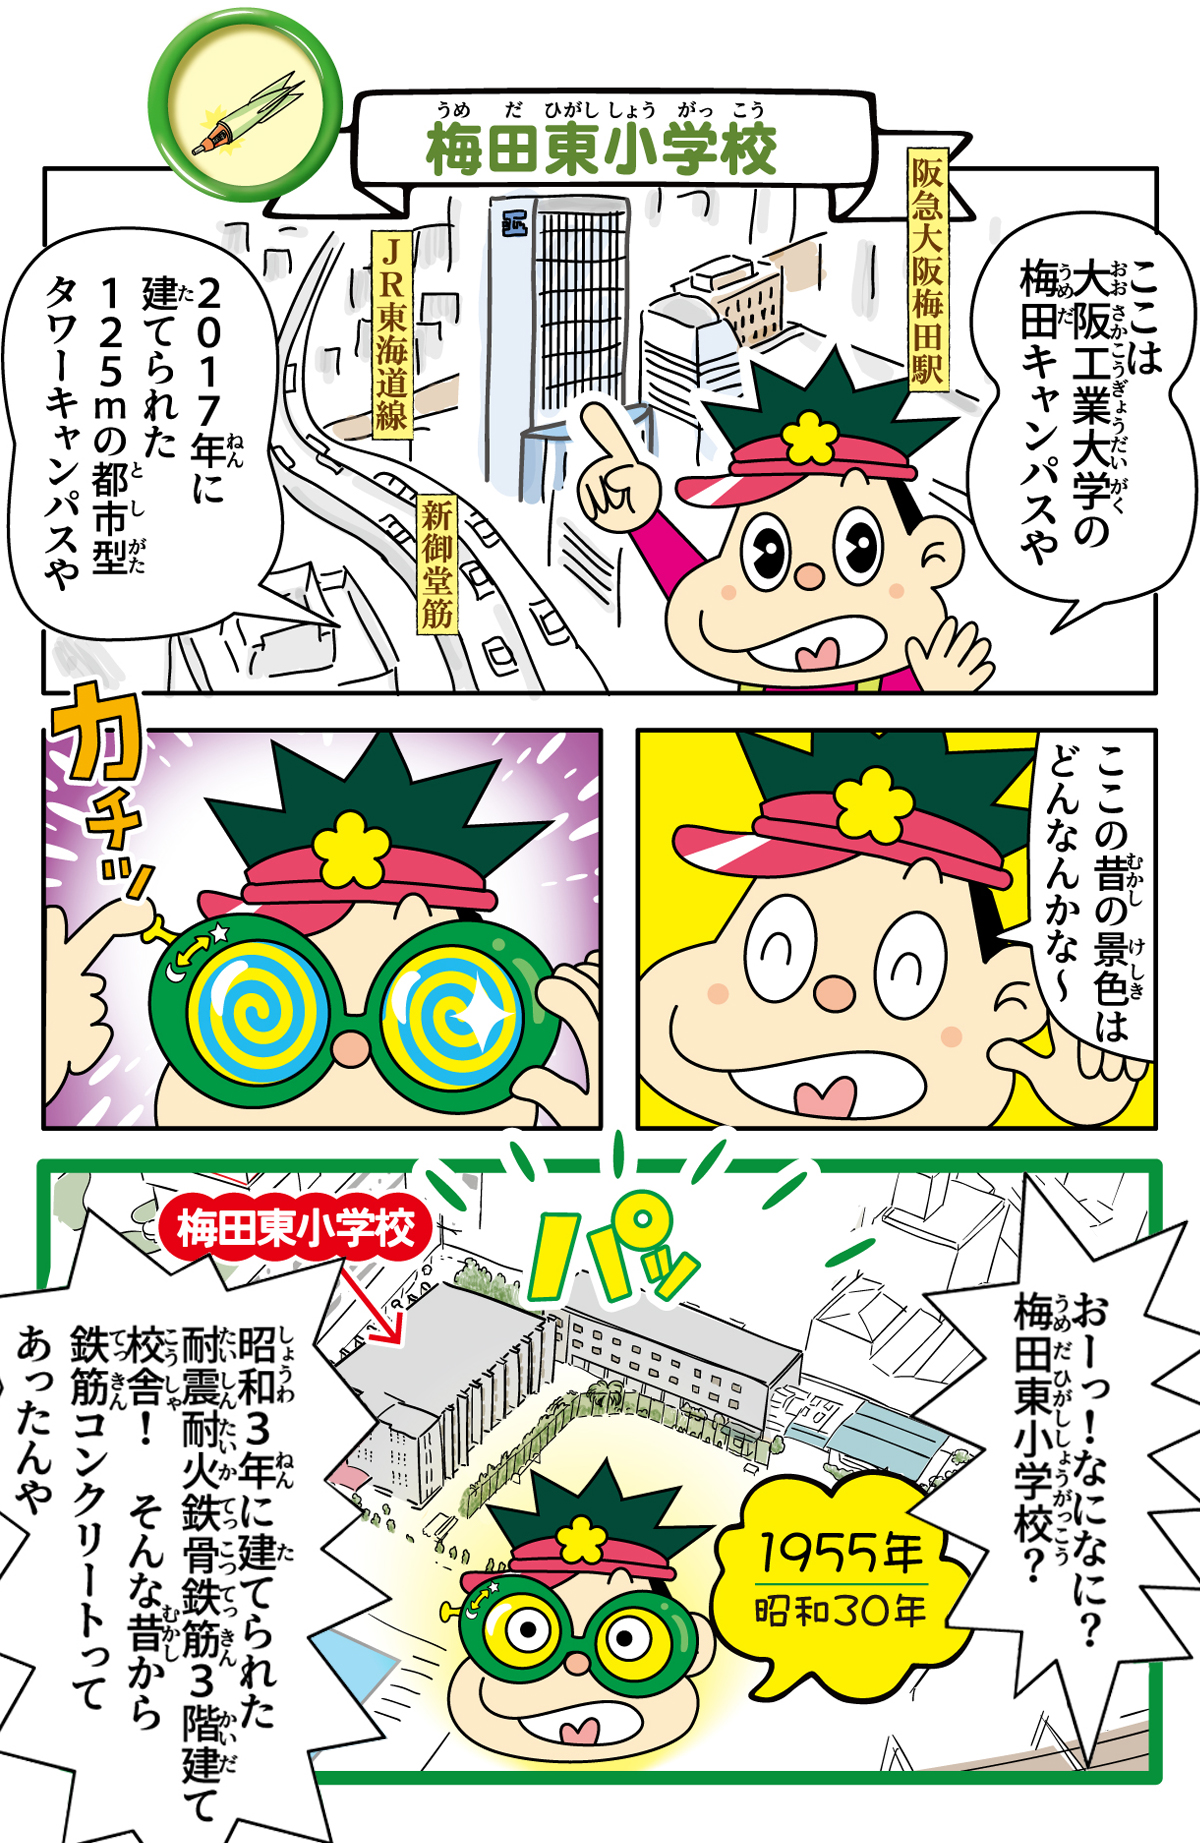 旧梅田東小学校跡地の歴史漫画 1